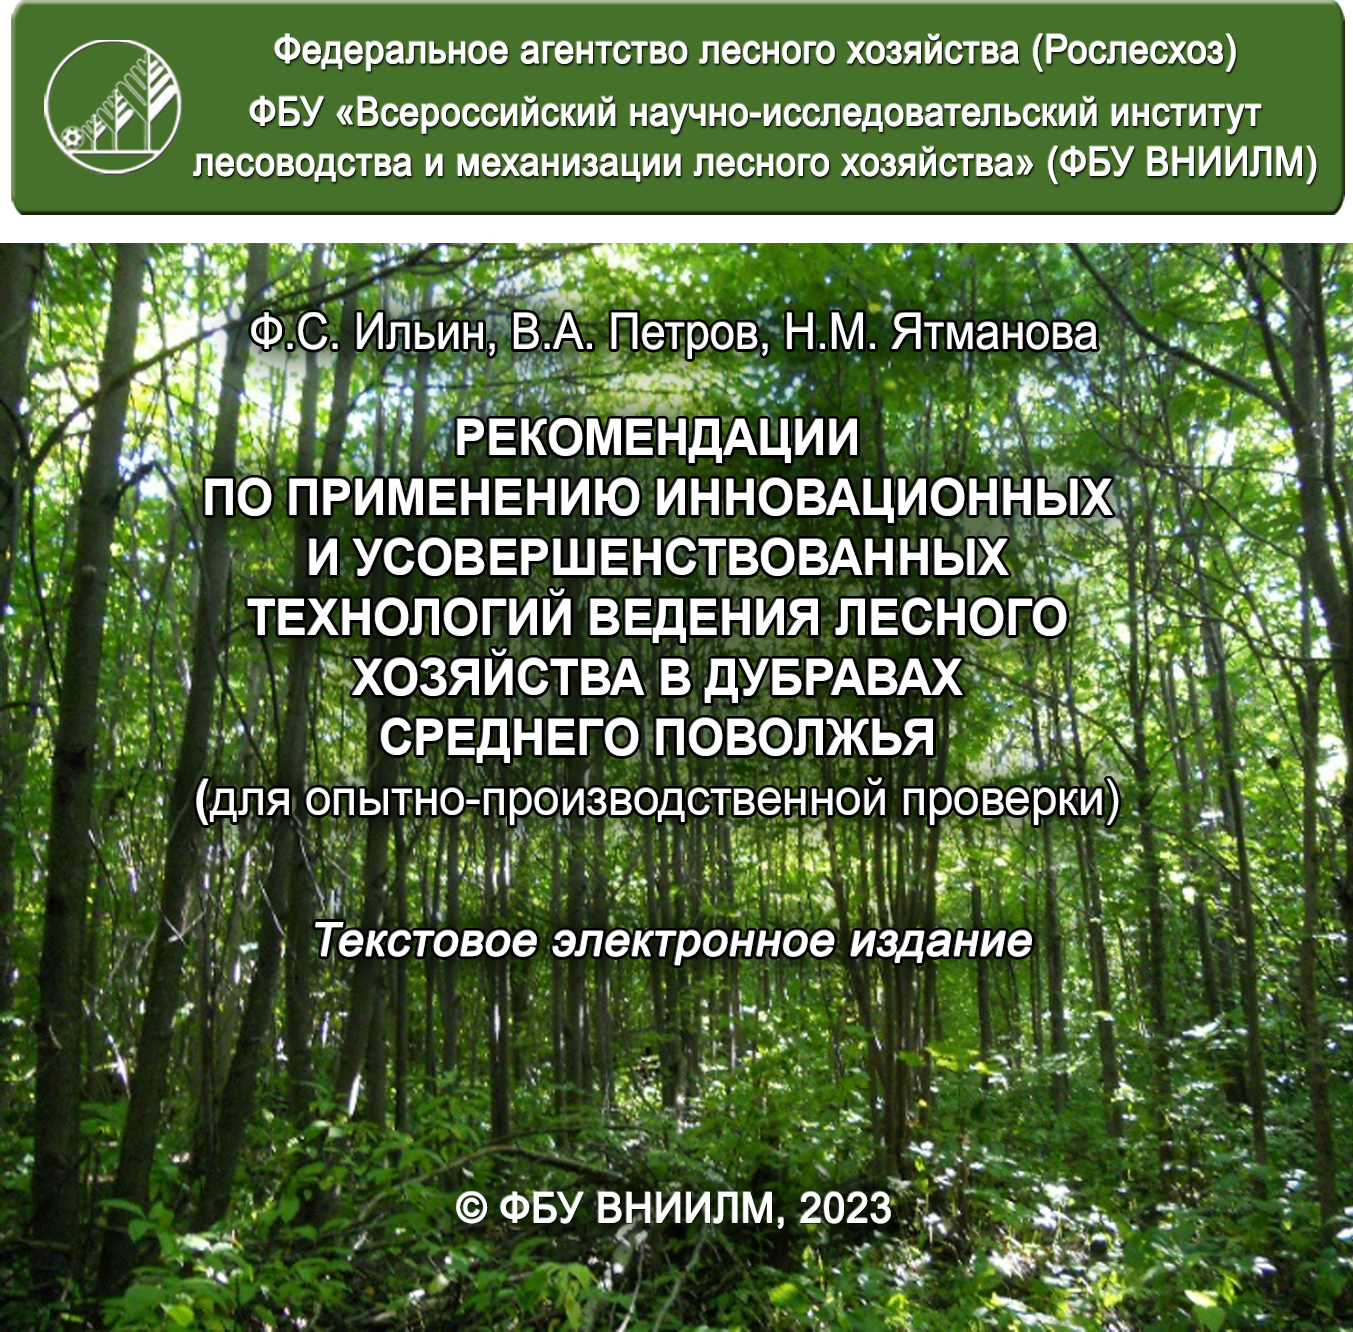 Рекомендации по применению инновационных и усовершенствованных технологий ведения лесного хозяйства в дубравах Среднего Поволжья